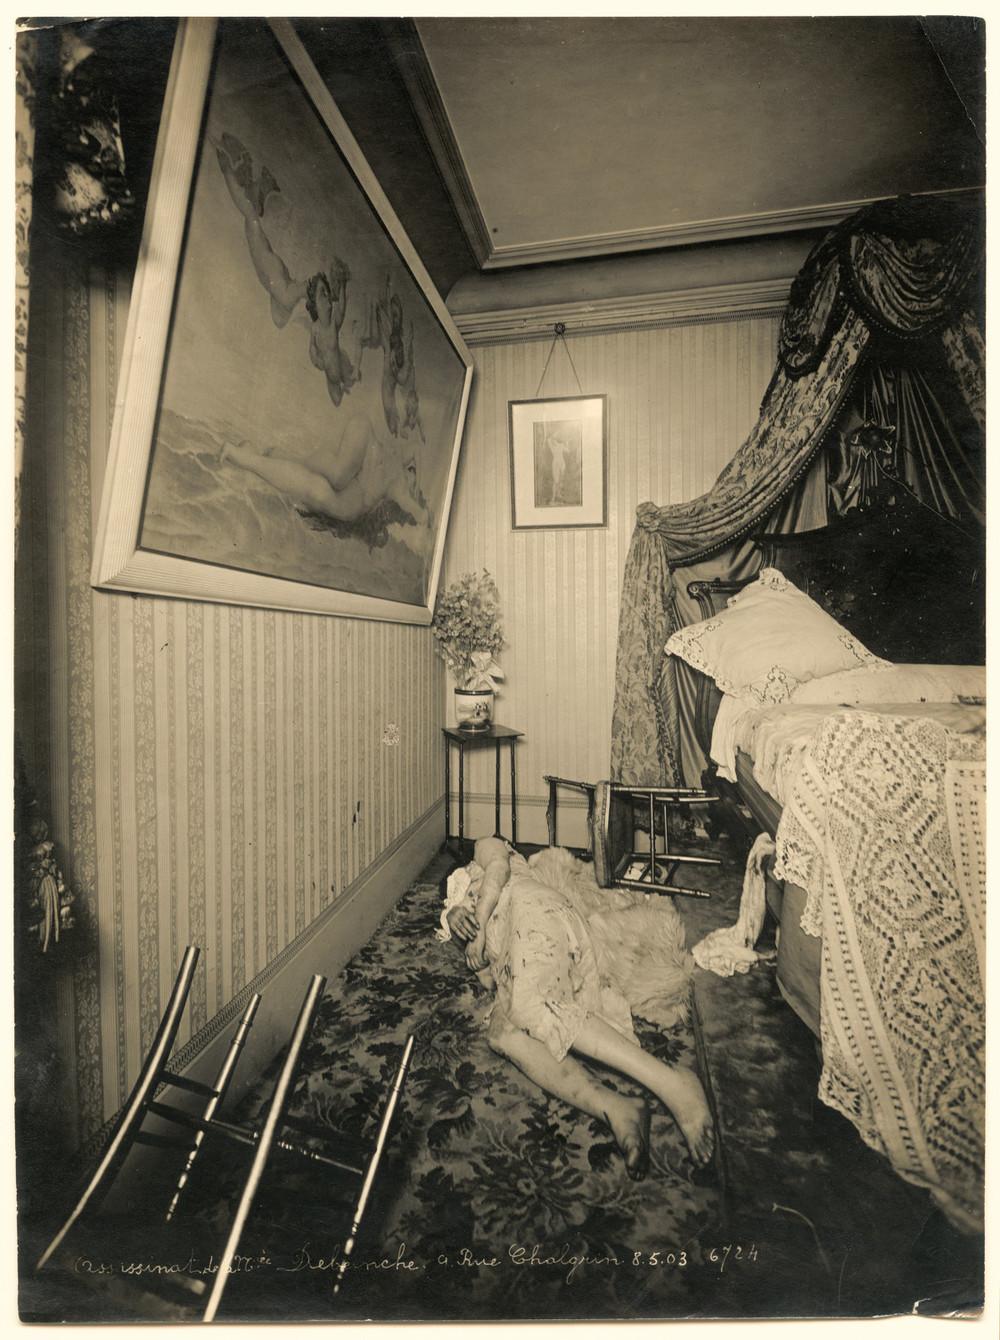 Η Μαντάμ Debeinche βρέθηκε νεκρή στο διαμέρισμά της στην οδό Chalgrin, στις 8 Μαΐου του 1903. Το σκούρο χρώμα στις πατούσες της δείχνει ότι έχει αρχίσει η διαδικασία της αποσύνθεσης.